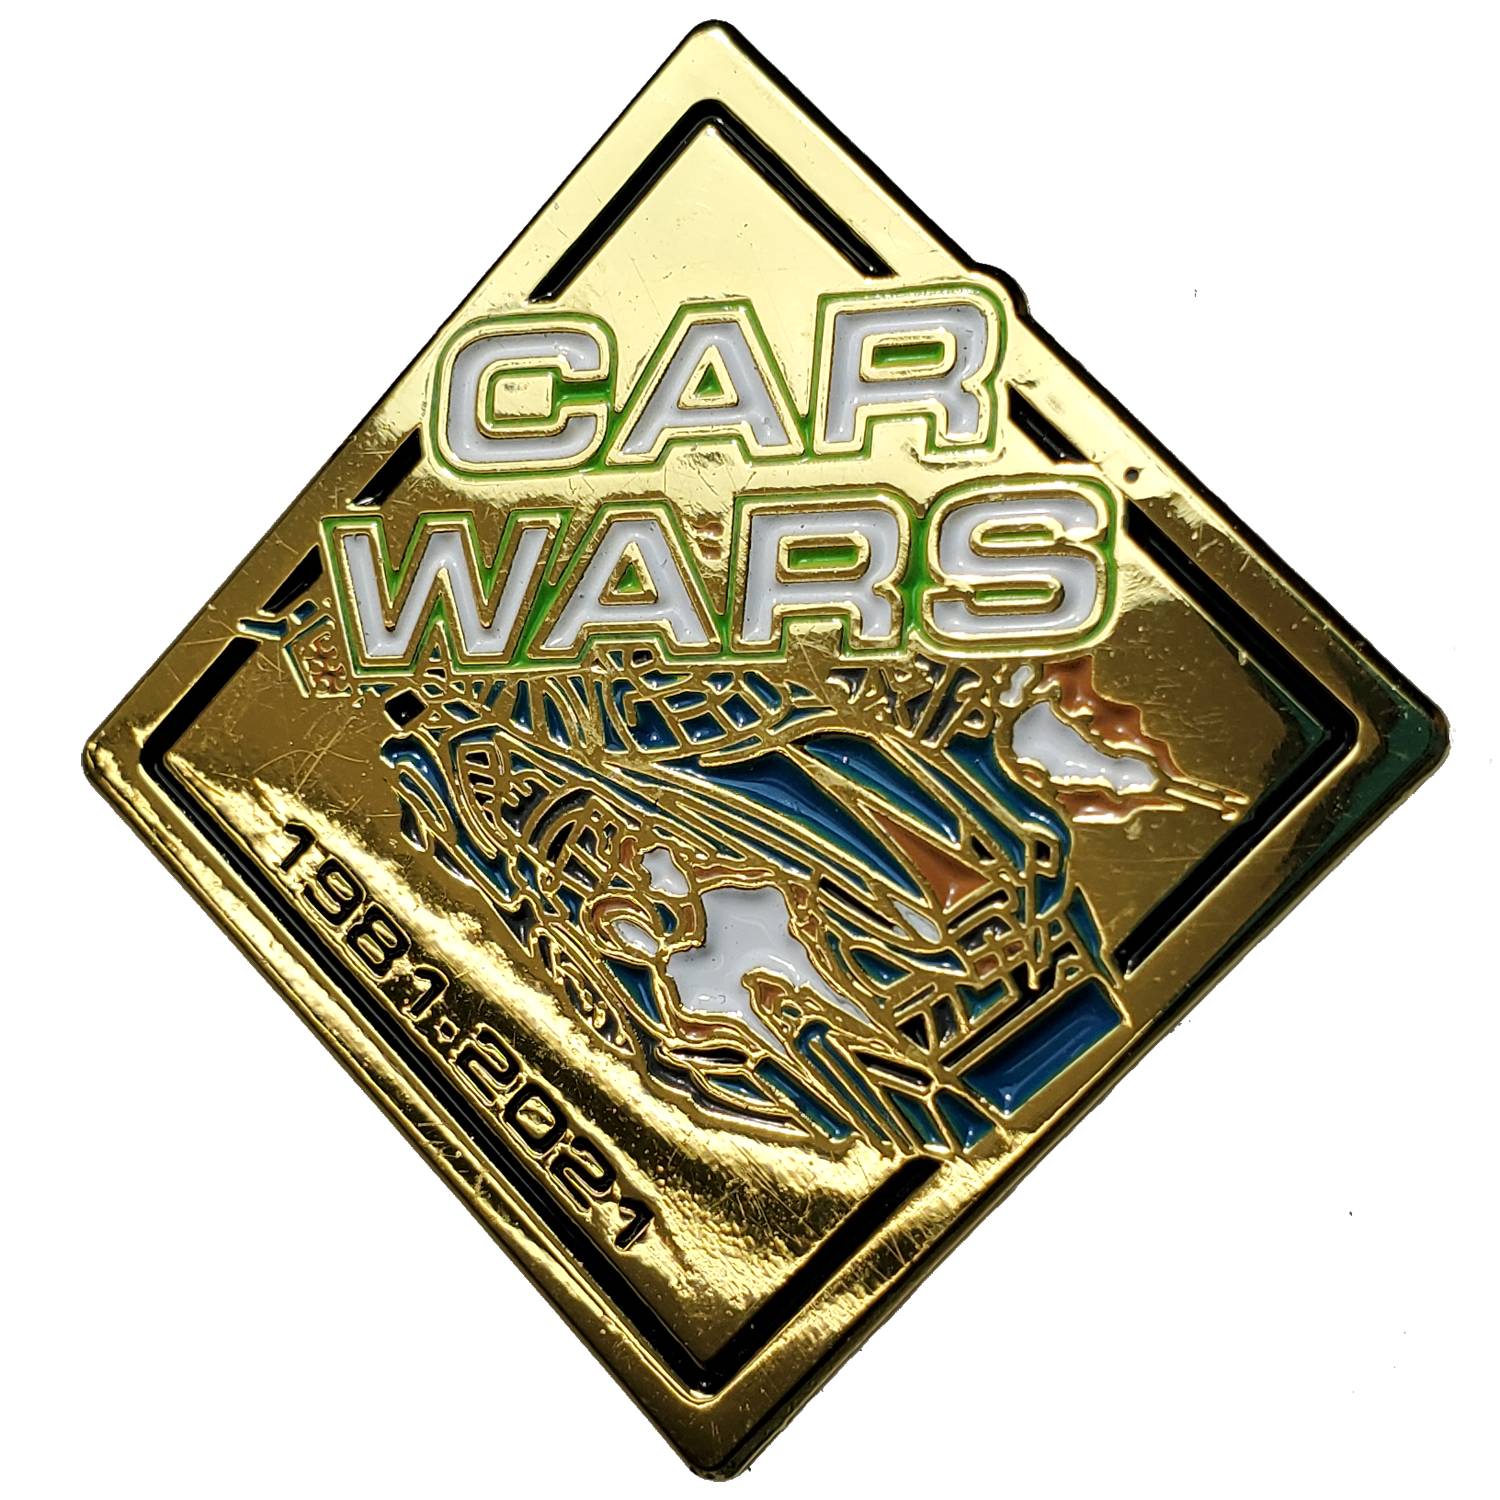 Car Wars 40th Anniversary Pin